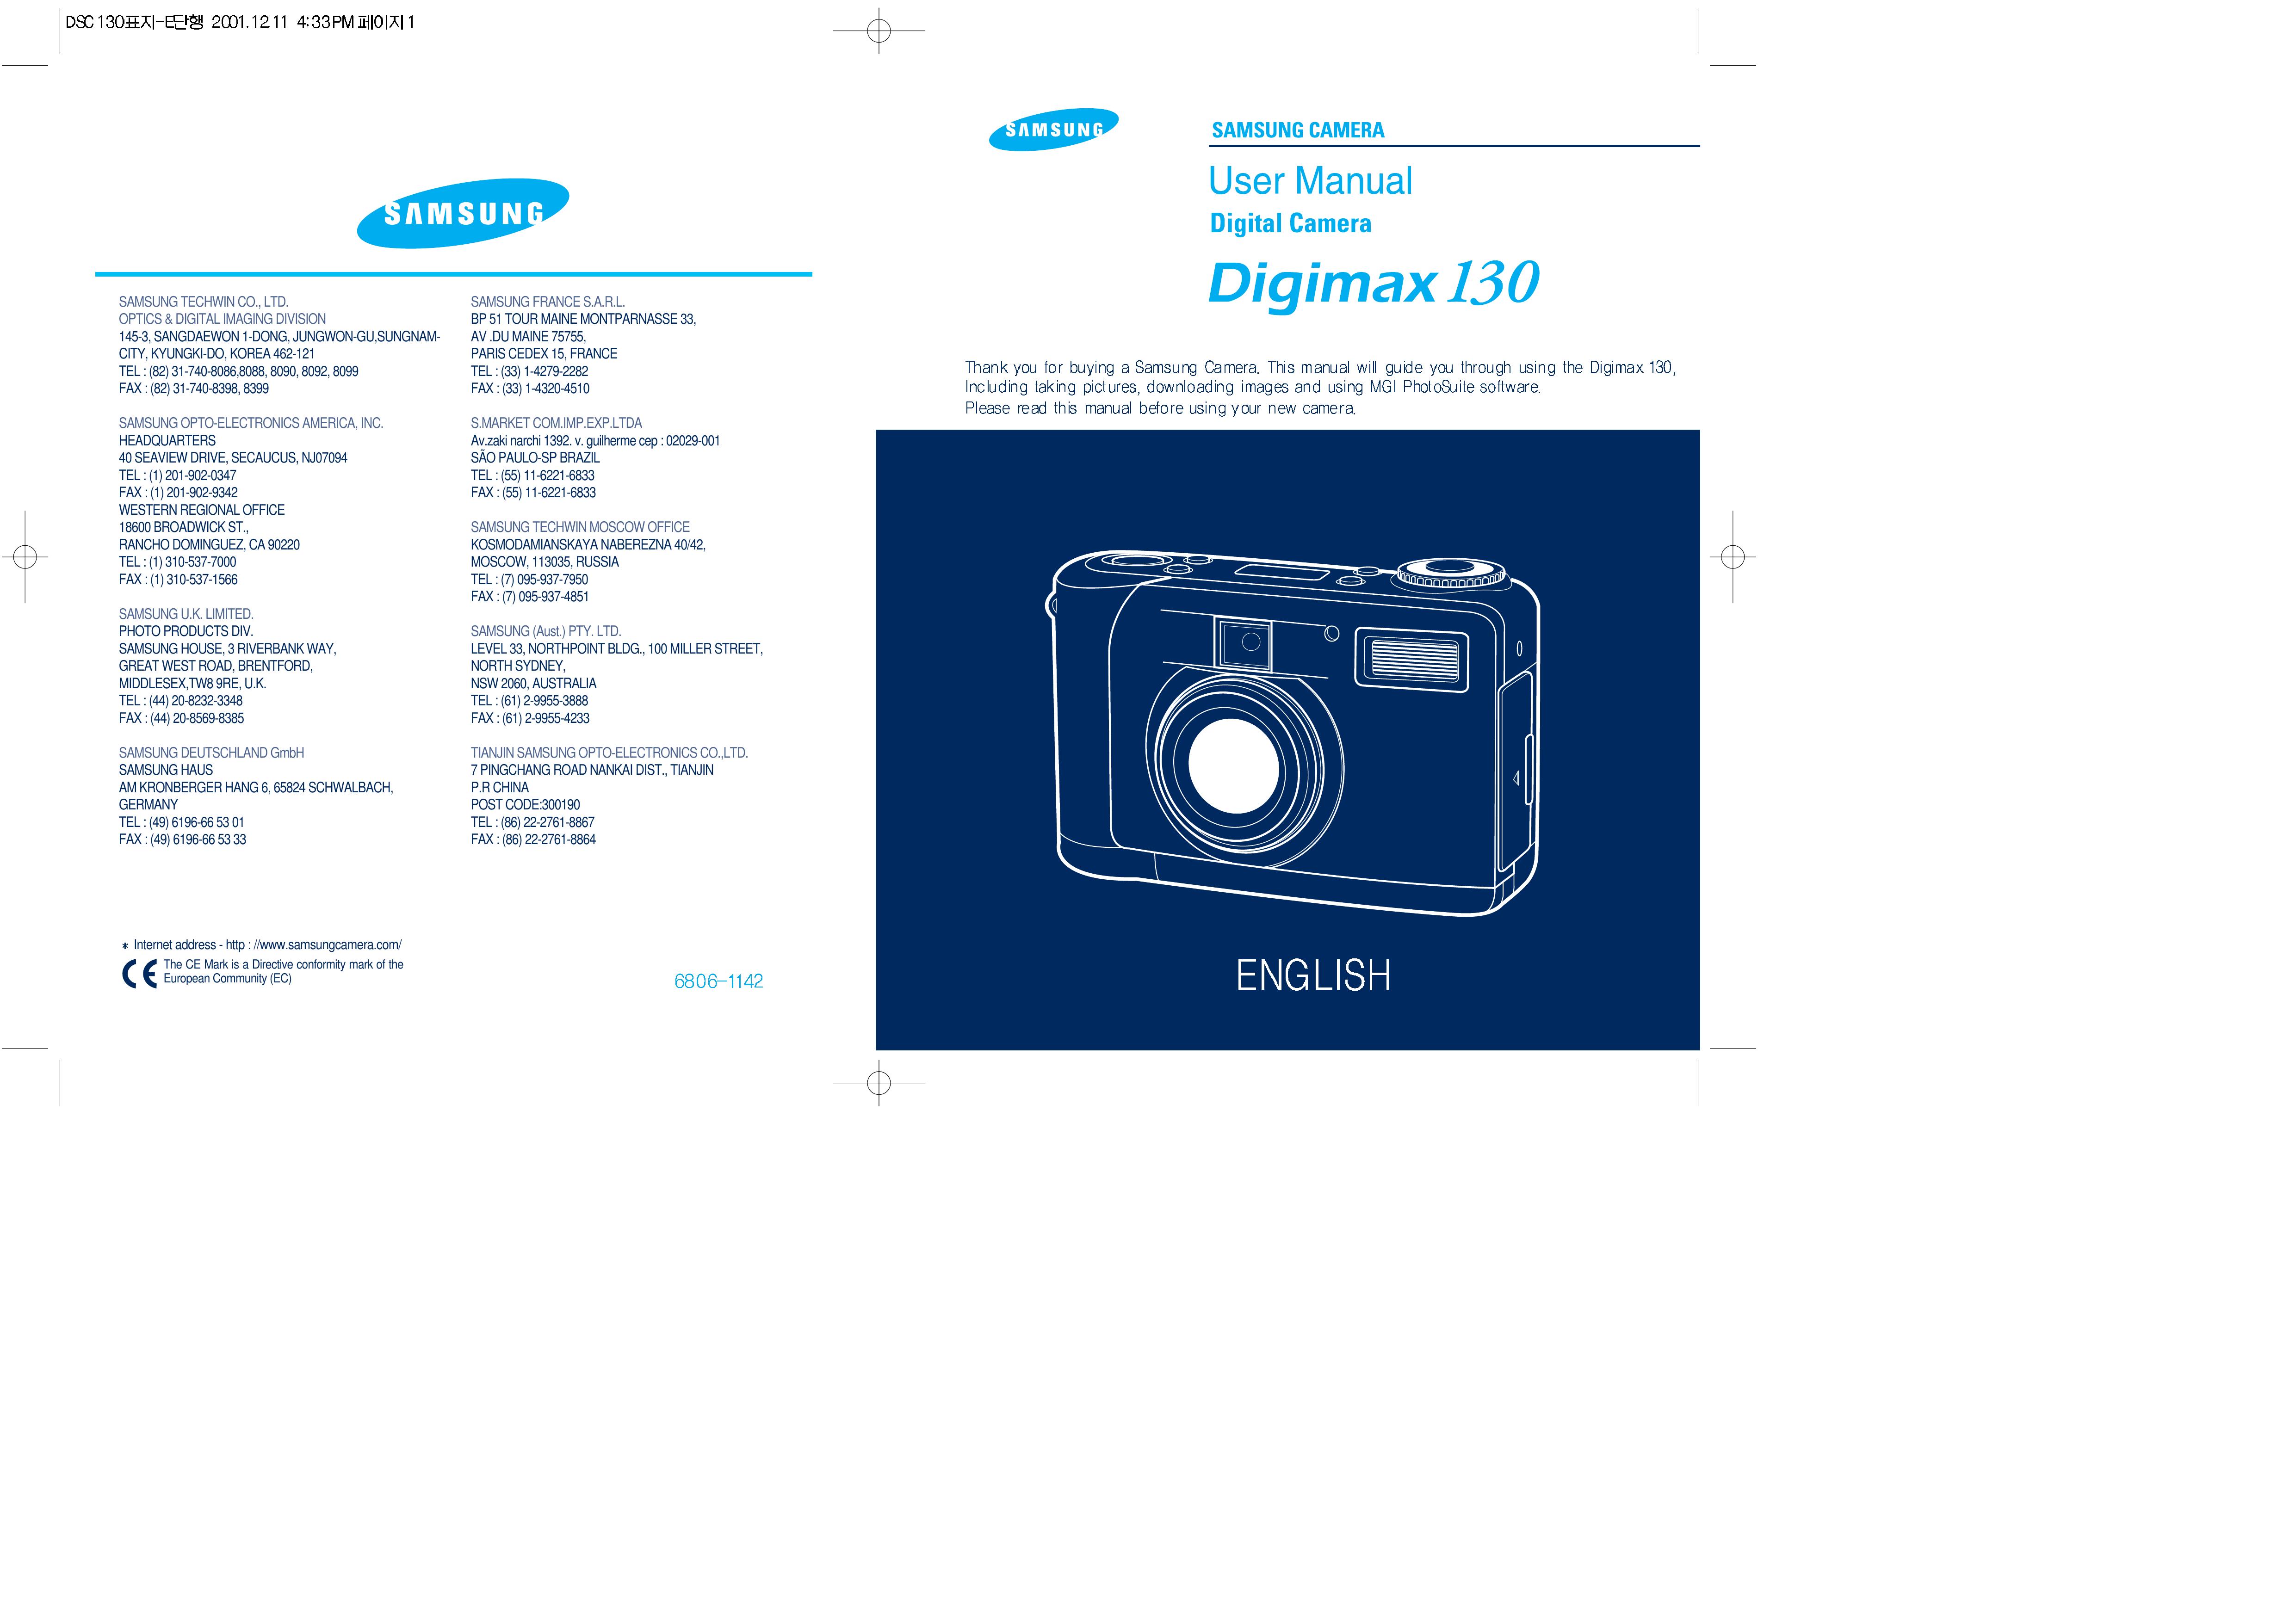 Samsung 130 Digital Camera User Manual